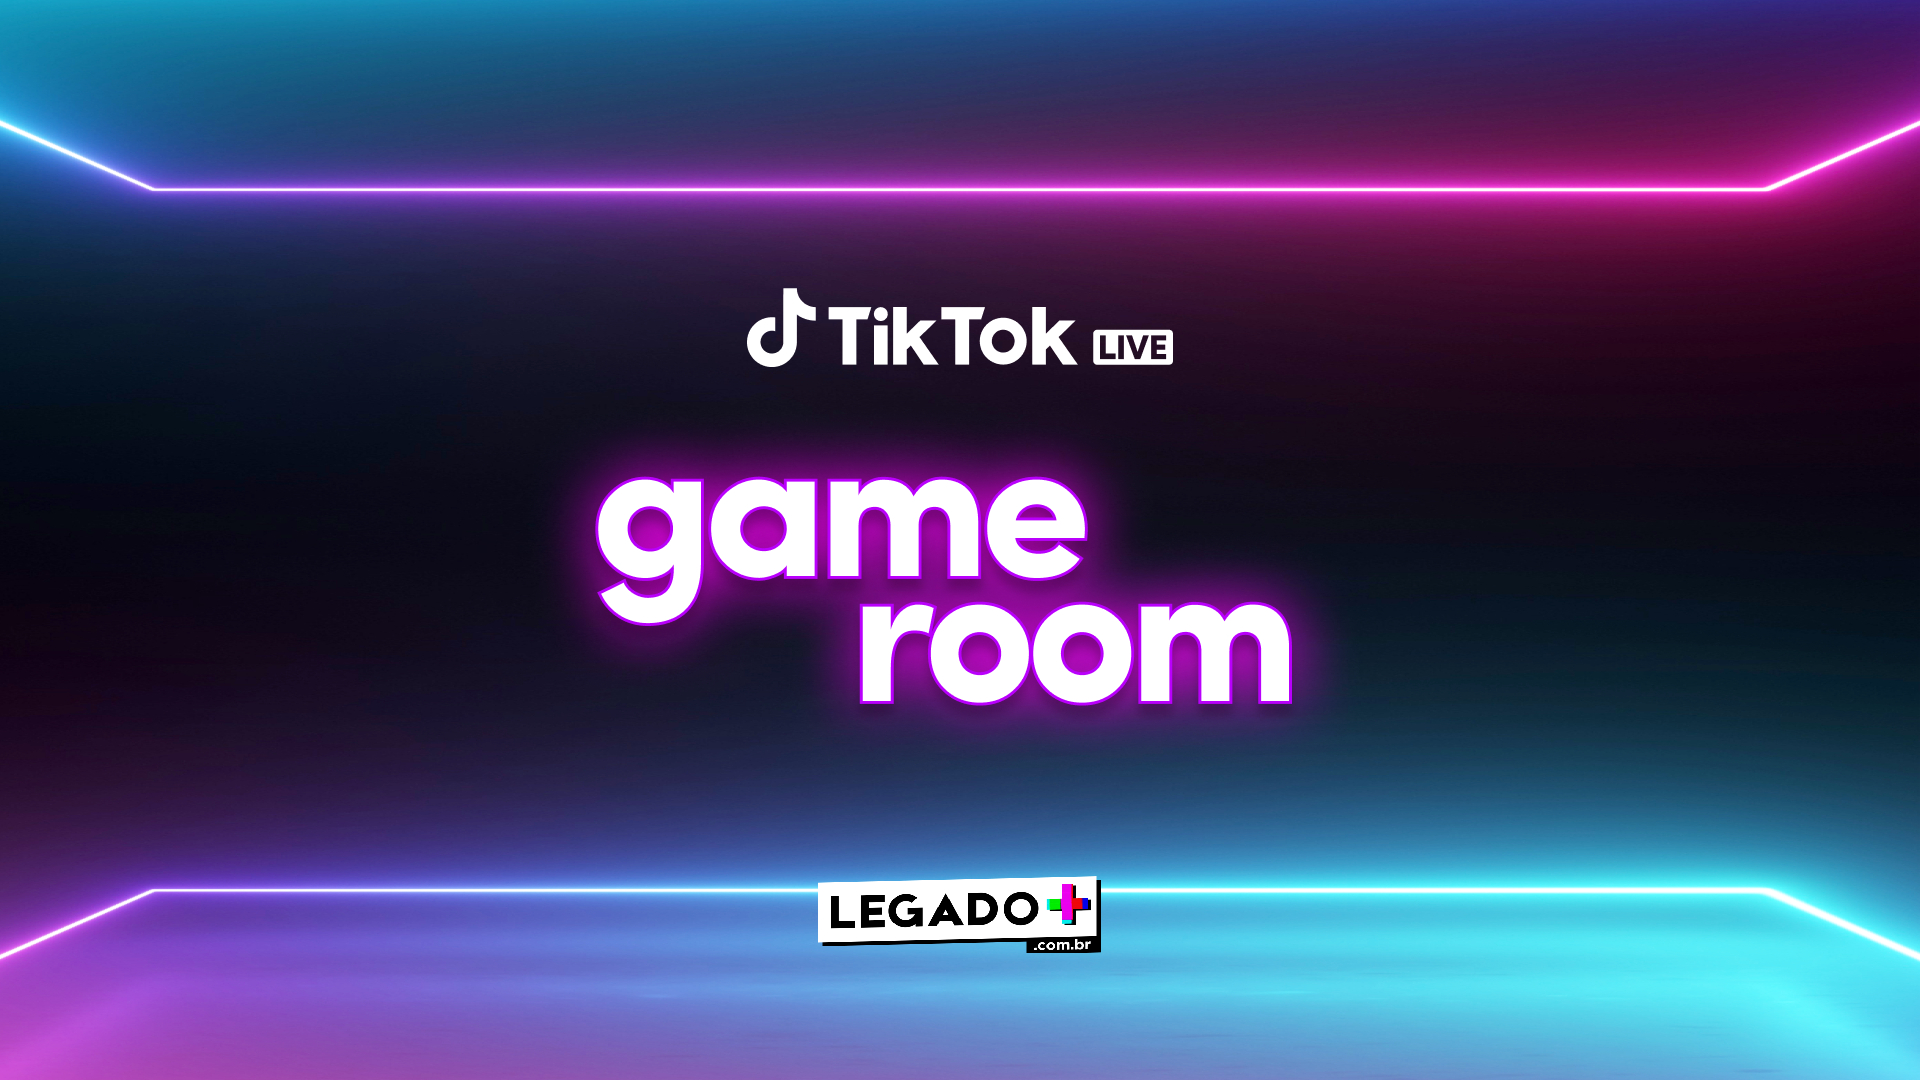 TikTok lança o Game Room neste sábado - legadoplus